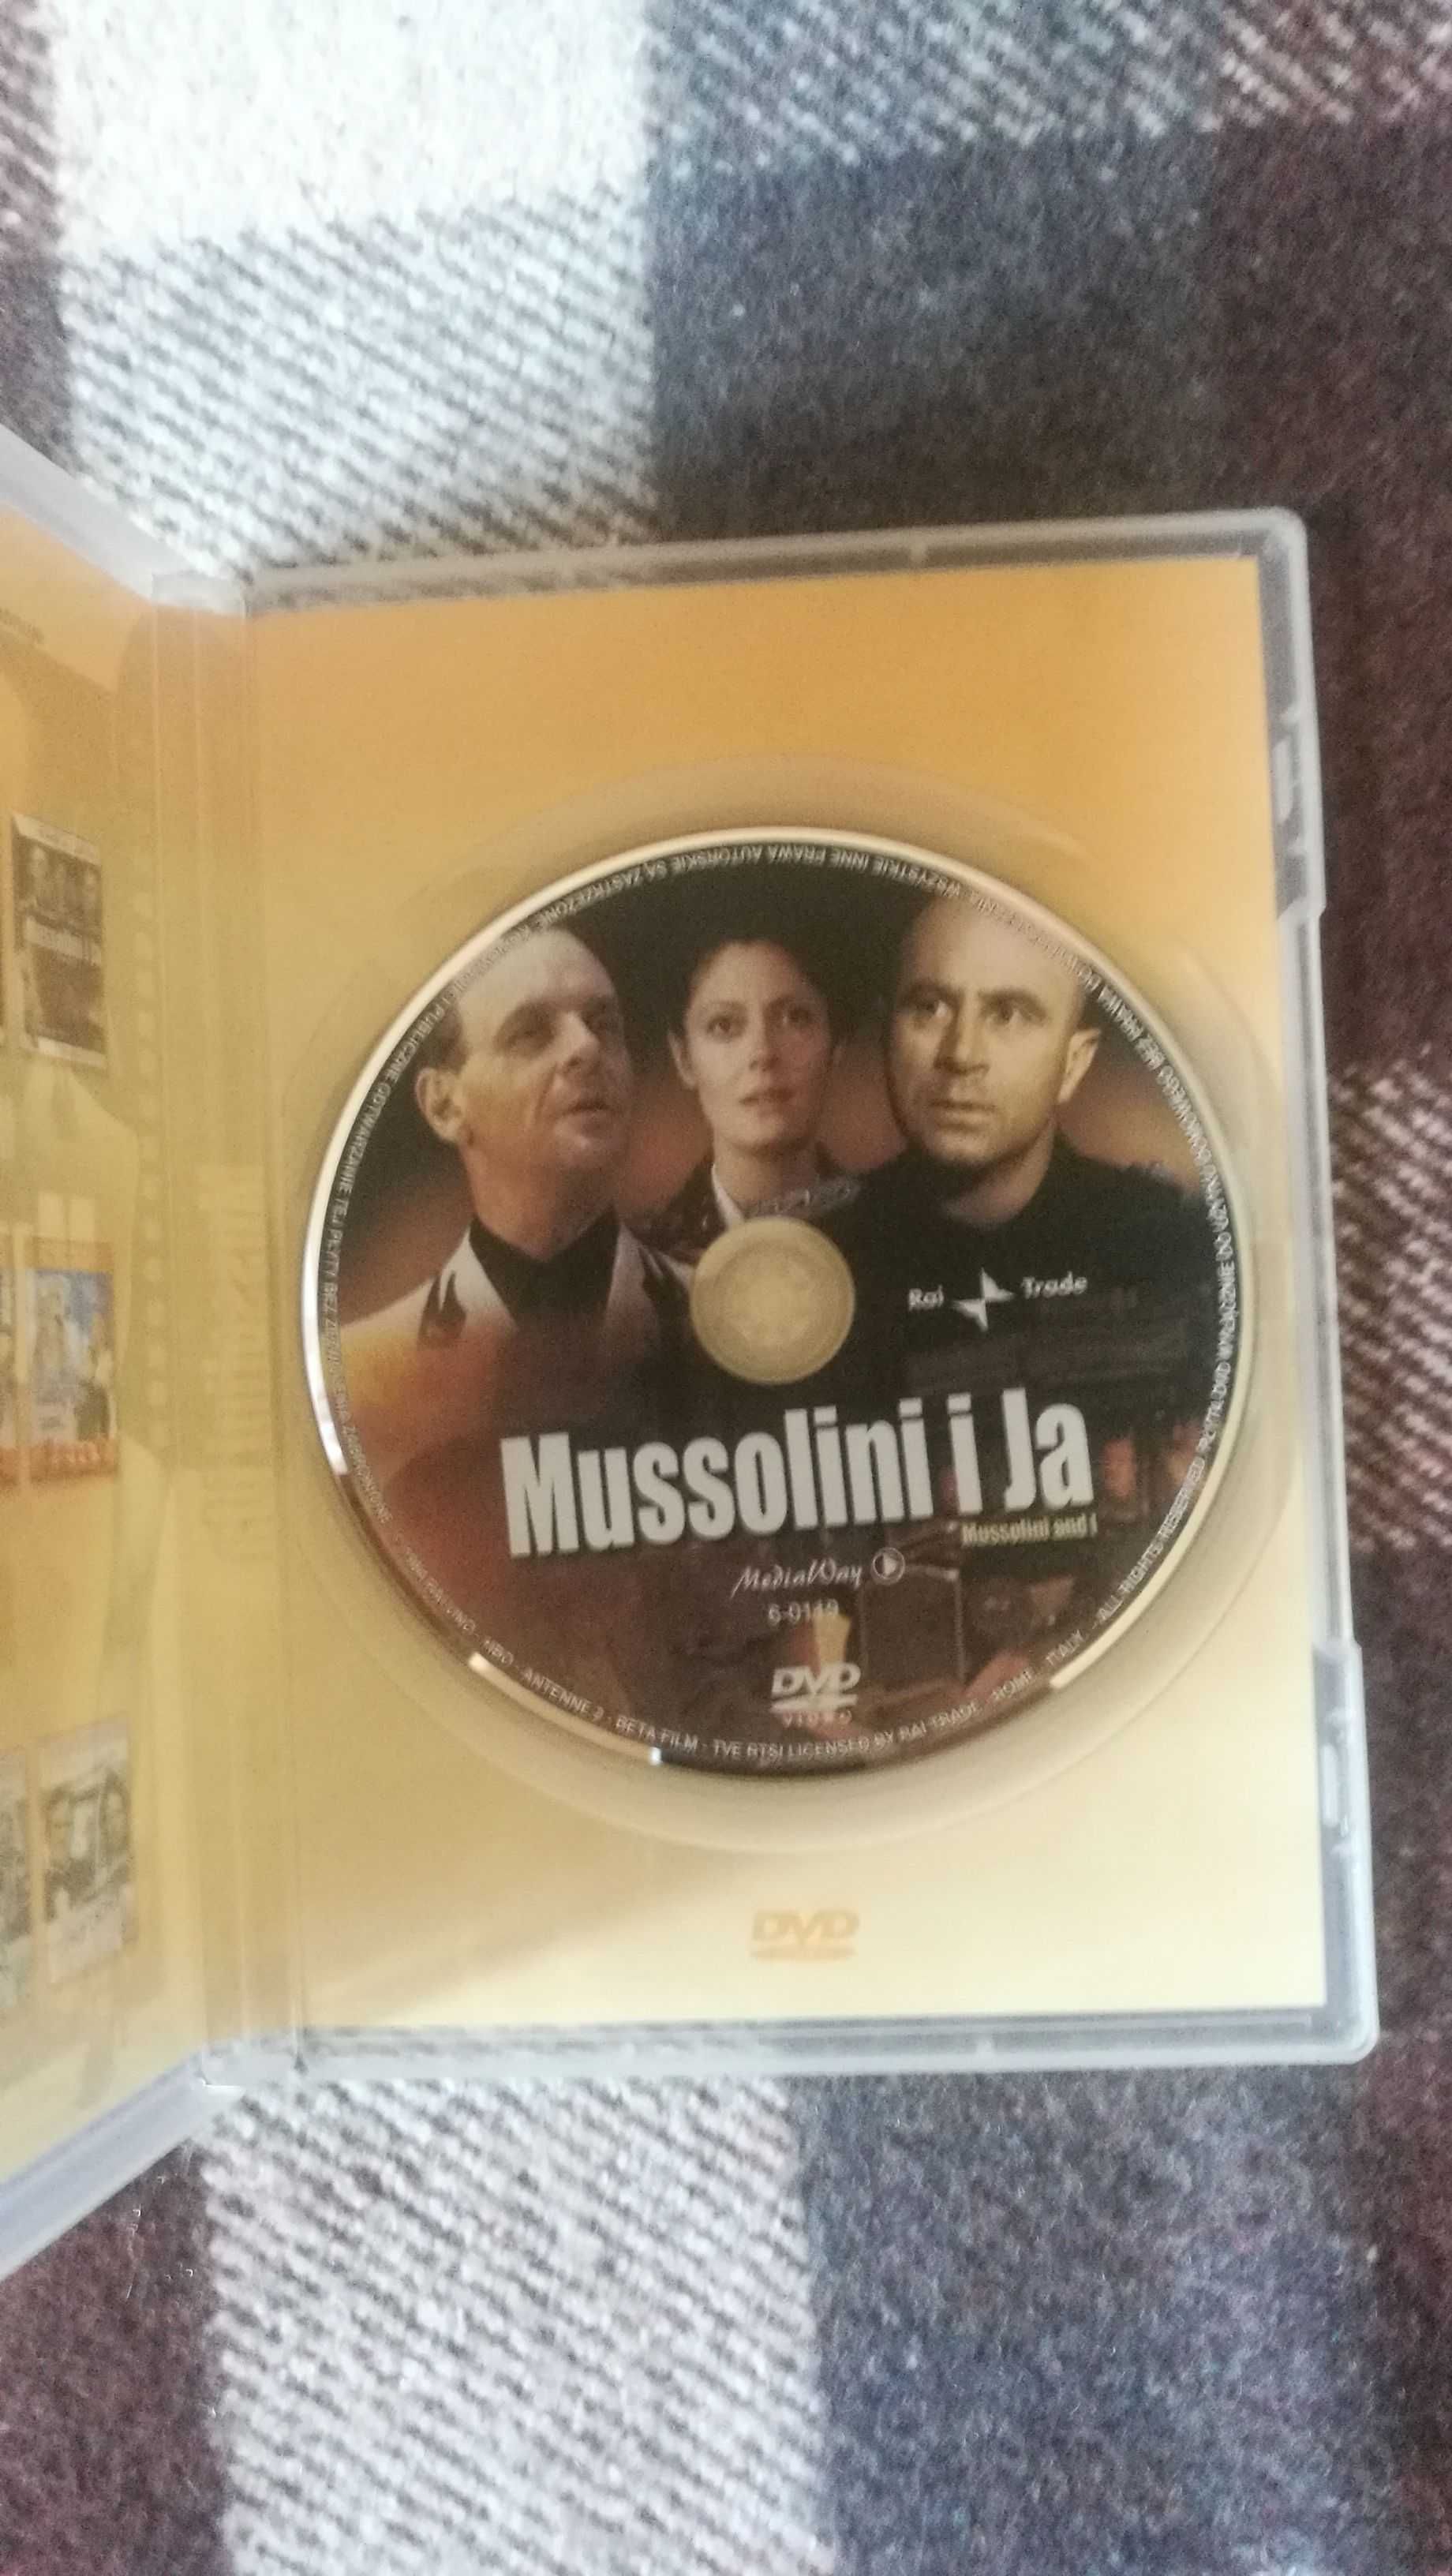 Mussolini i Ja DVD